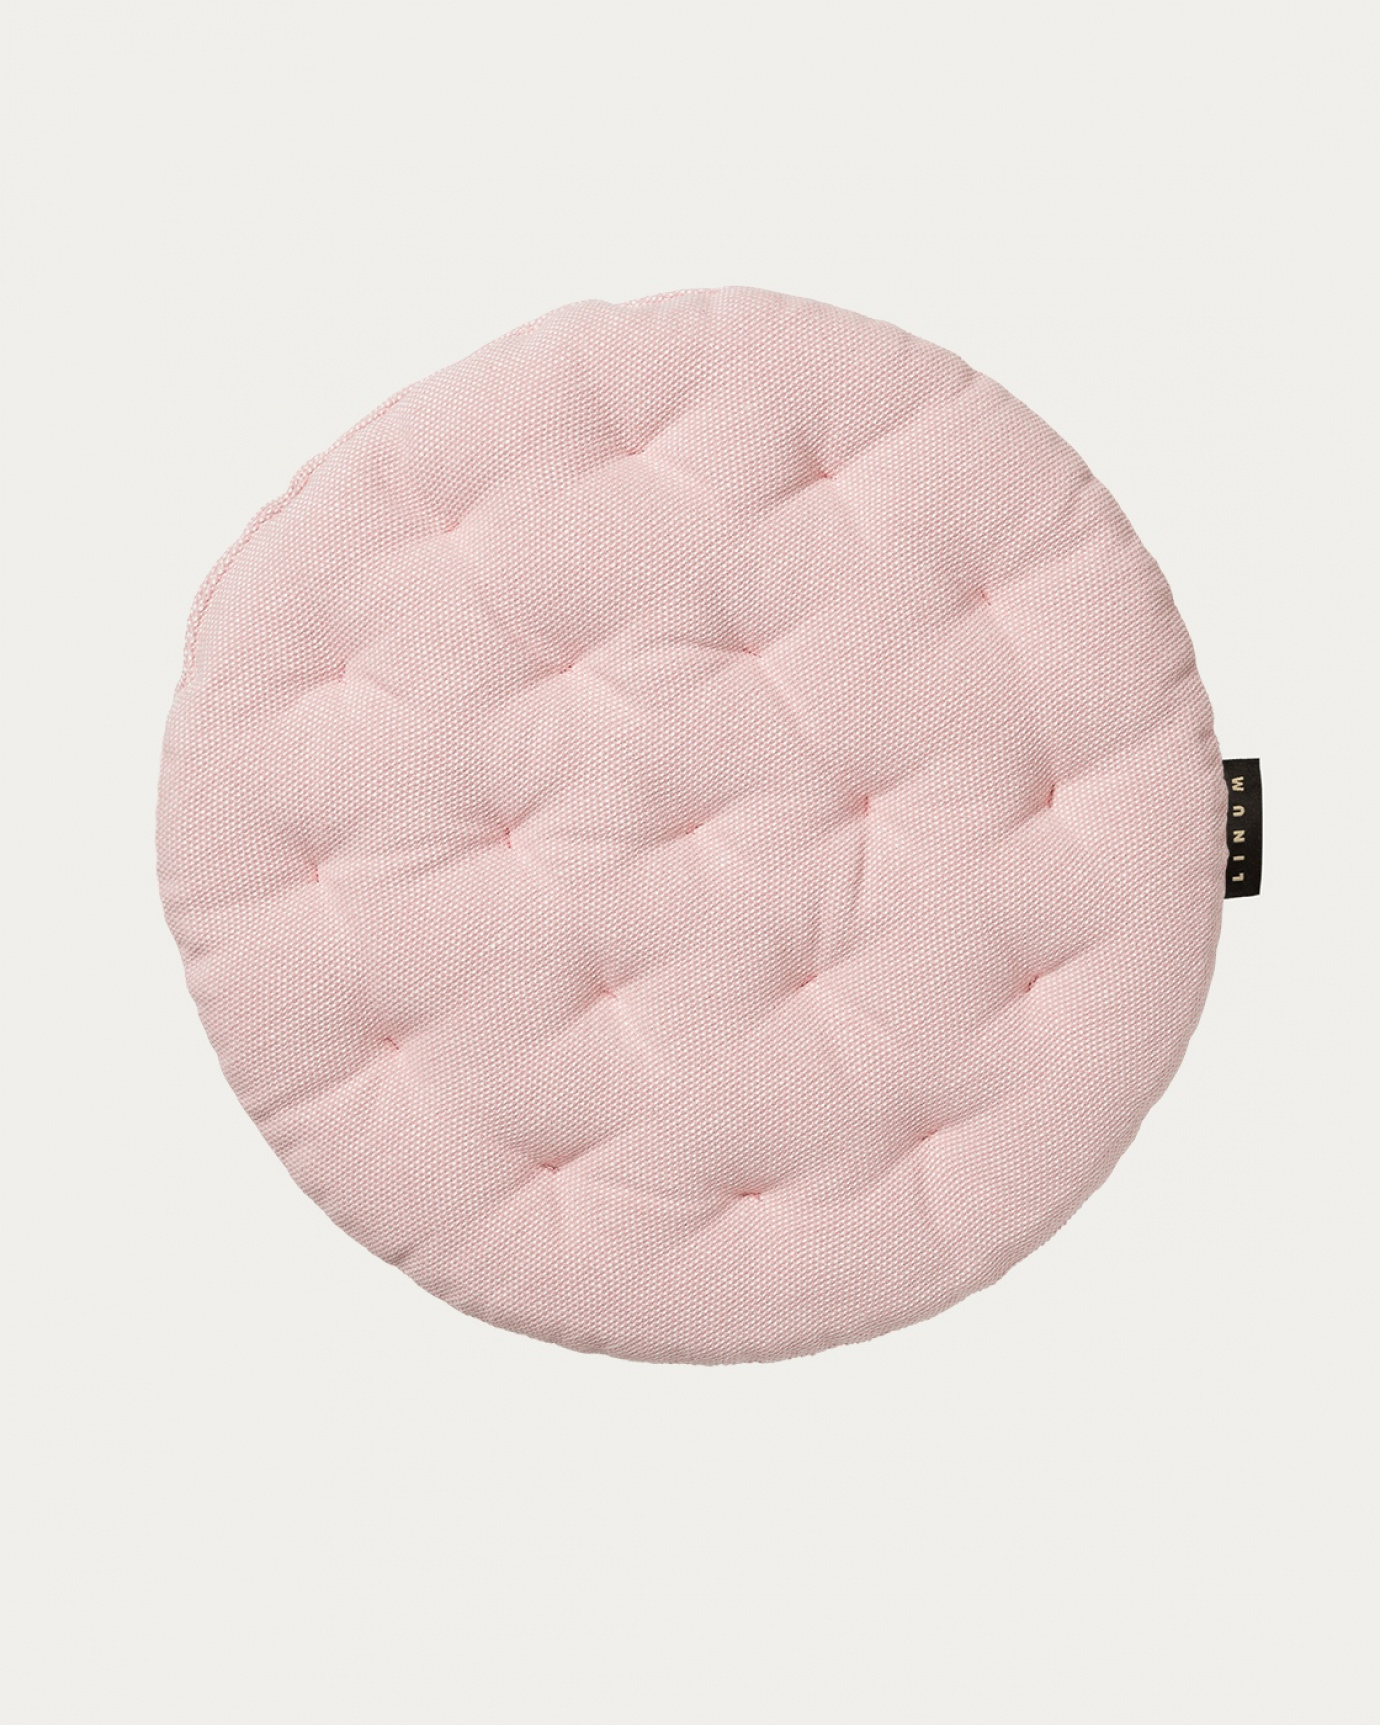 Immagine prodotto rosa antico PEPPER cuscini sedie di cotone con imbottitura in poliestere di LINUM DESIGN. Dimensioni ø37 cm.